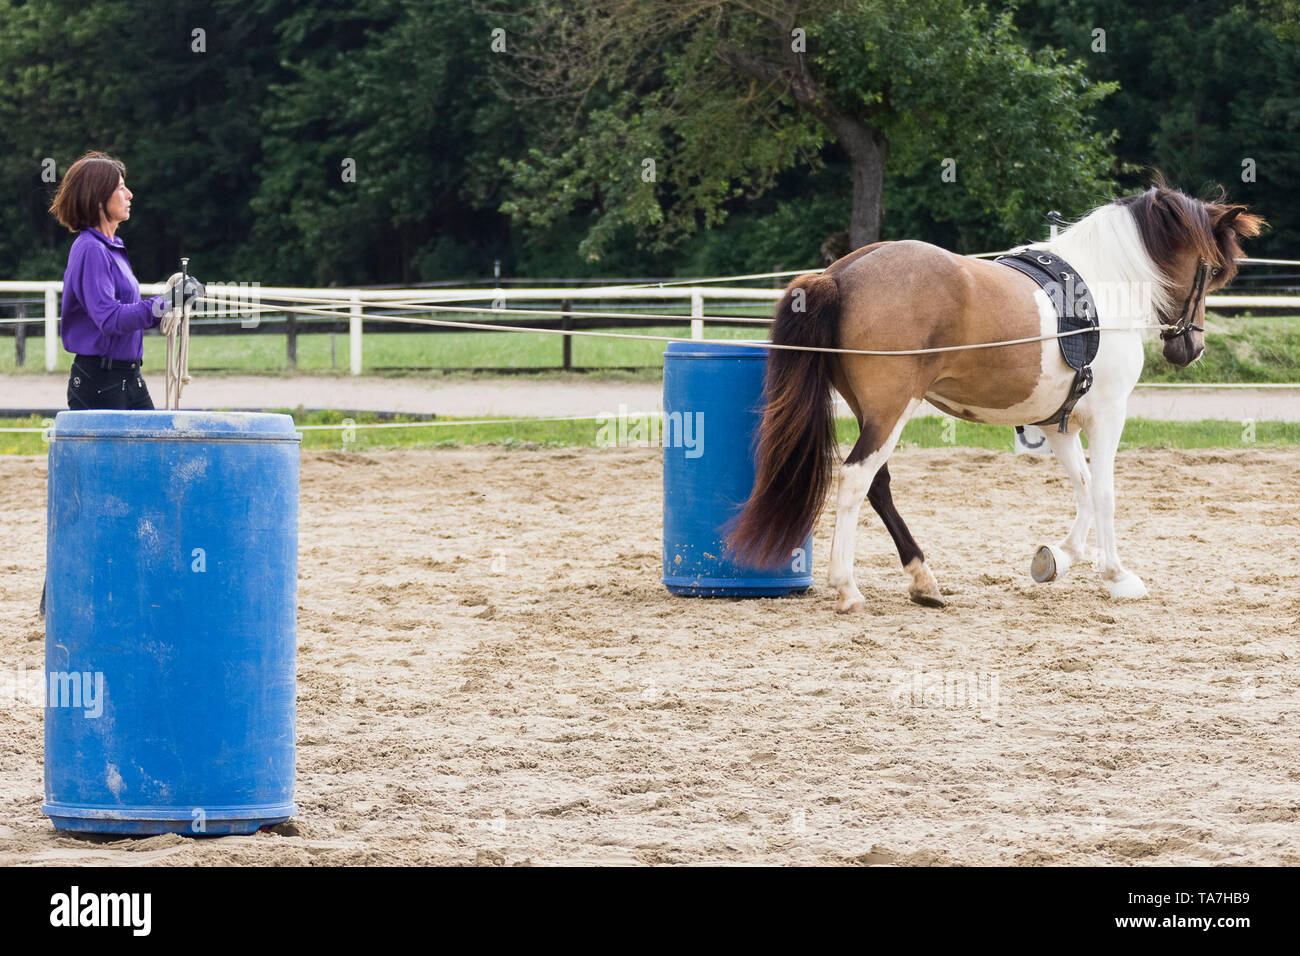 Boden fahren, genannt auch lange - Futter: Lehre ein junges Pferd auf, eine Person zu Fuß hinter sich zu bewegen, ein Vorläufer von sowohl am Kabelbaum fahren und in Zügel durch einen montierten Rider verwendet. Österreich Stockfoto